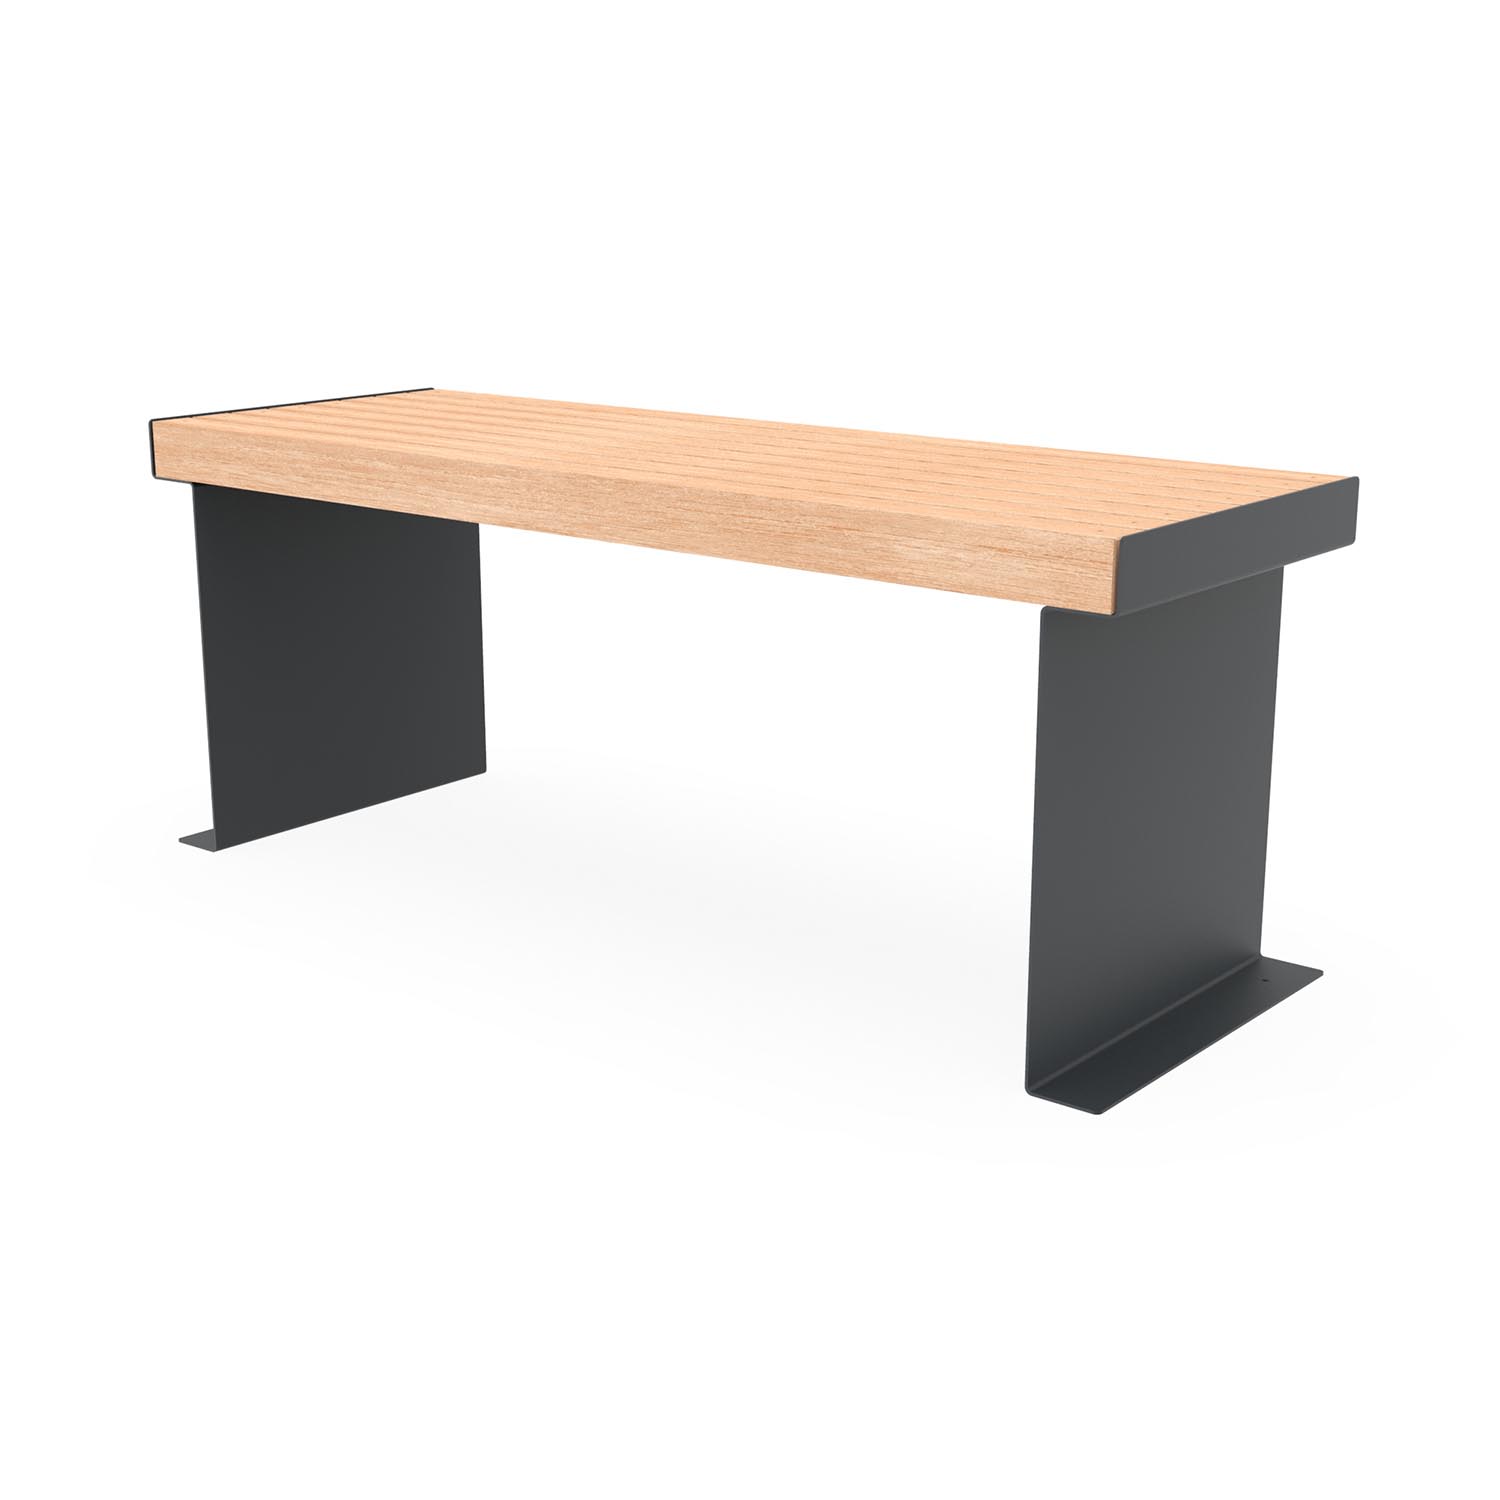 CUBE Tisch mit duplexbeschichtetem Gestell und Tischfläche aus Holz